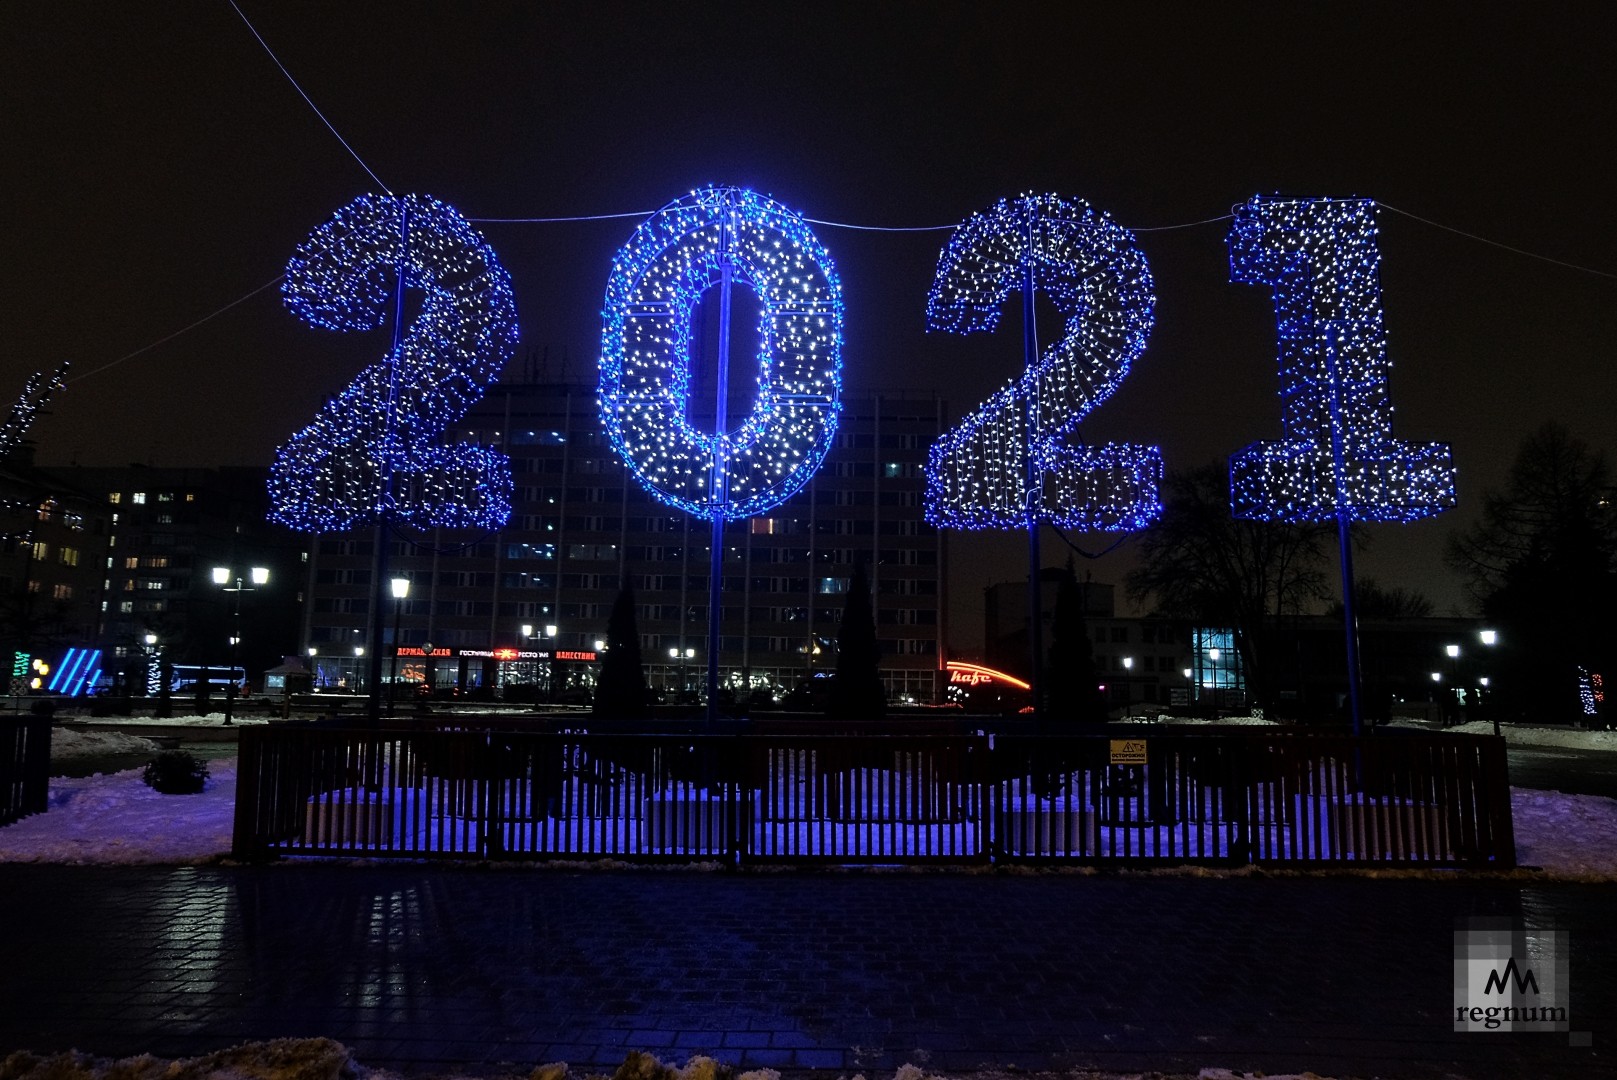 Новый год 2021 дней